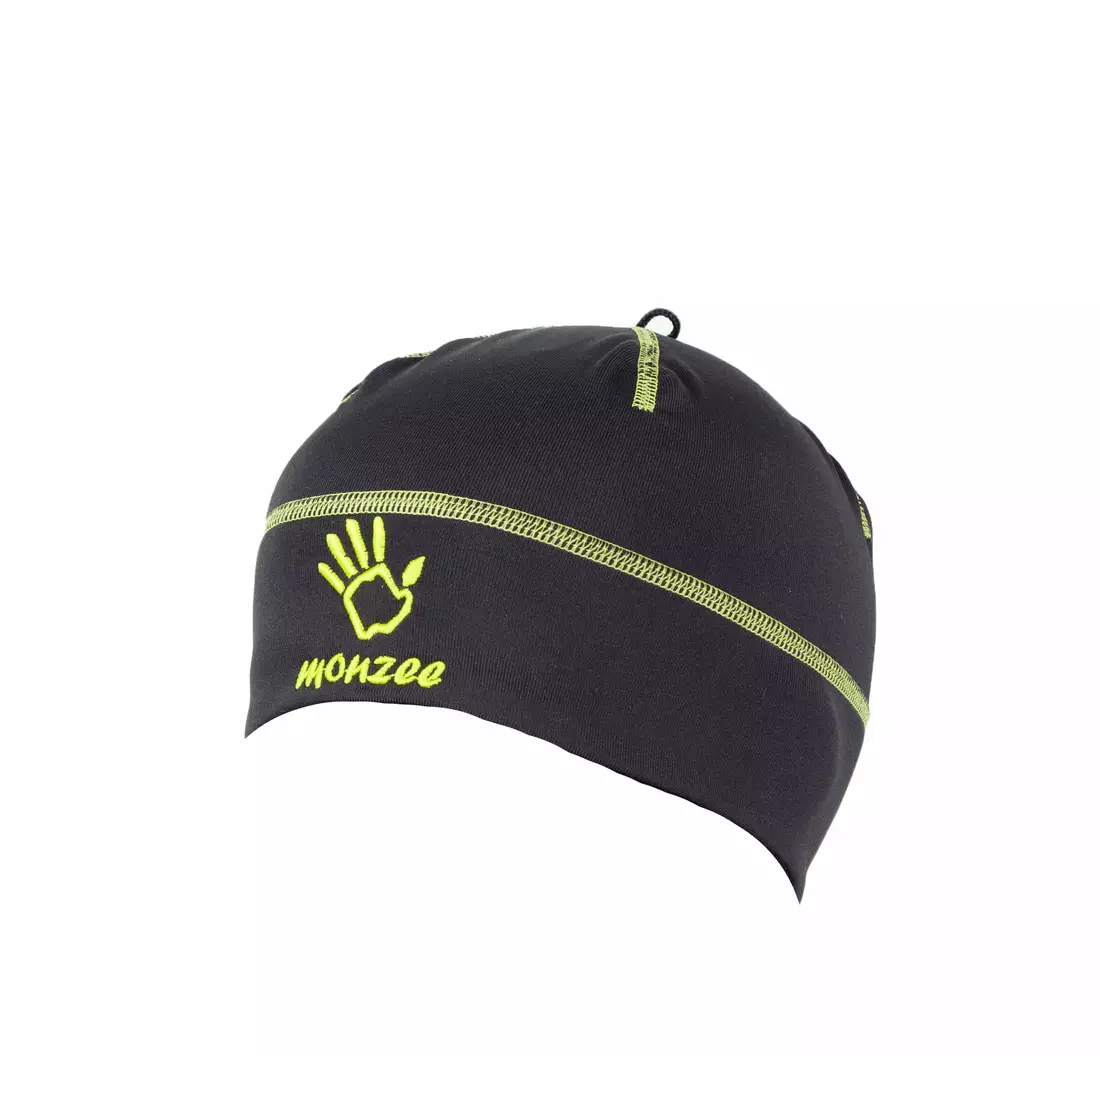 MONZEE - sportovní čepice 14/01 C. černá a zelená